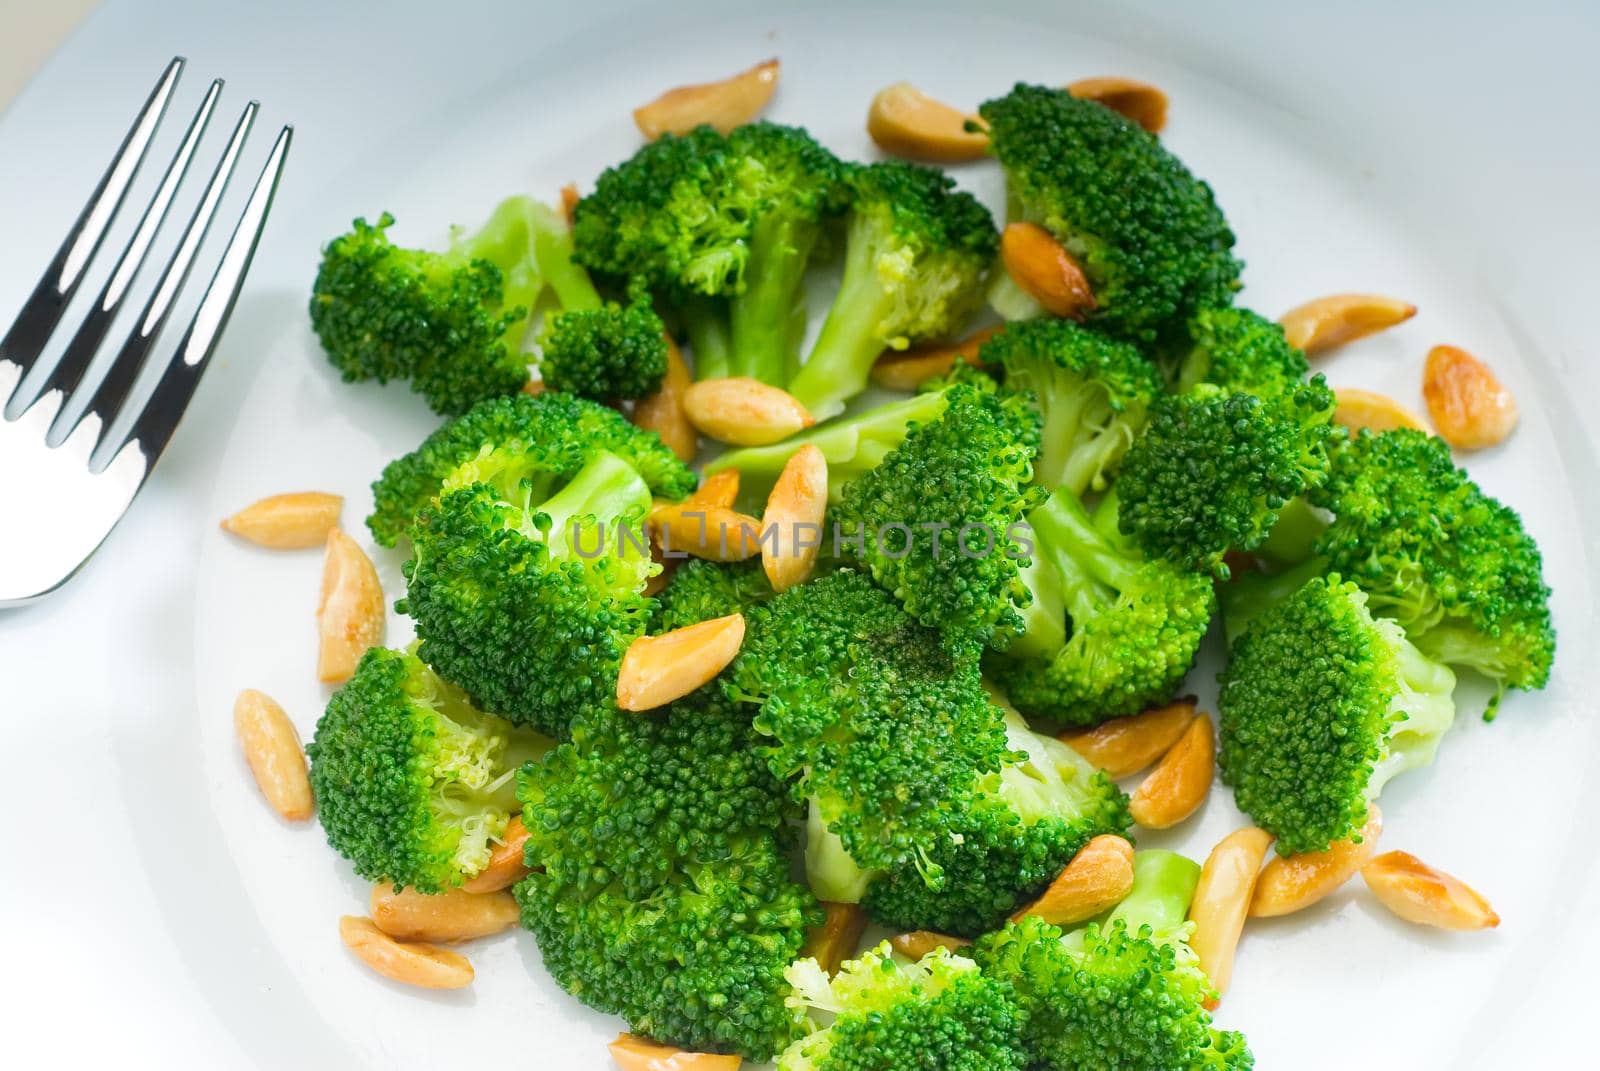 fresh sauteed broccoli and almonds by keko64